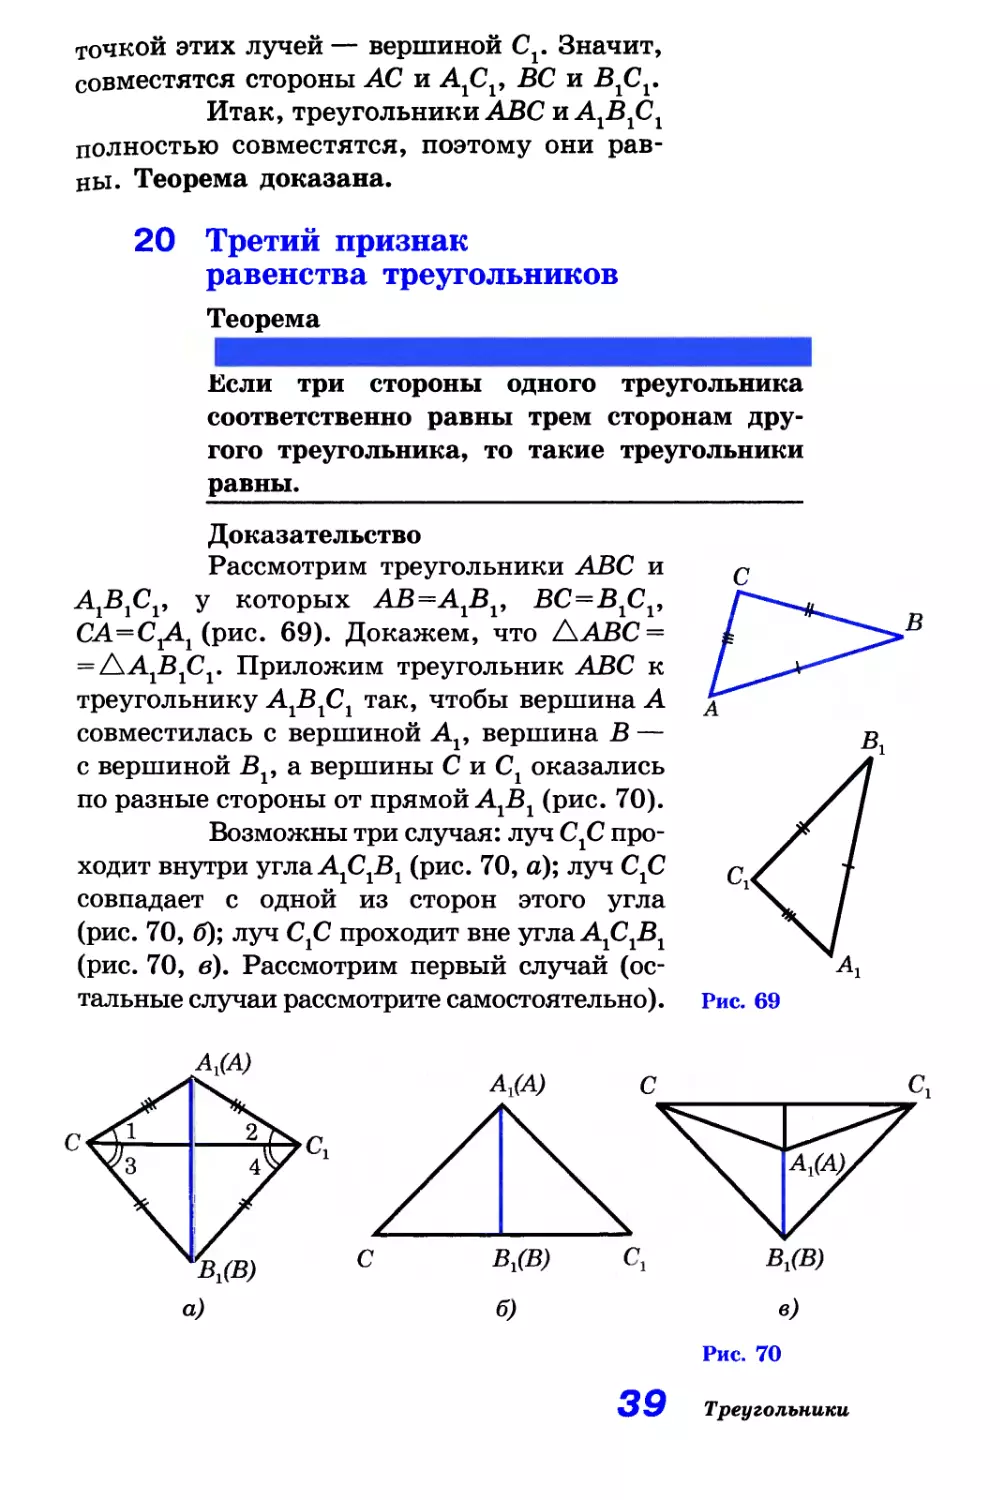 20. Третий признак равенства треугольников